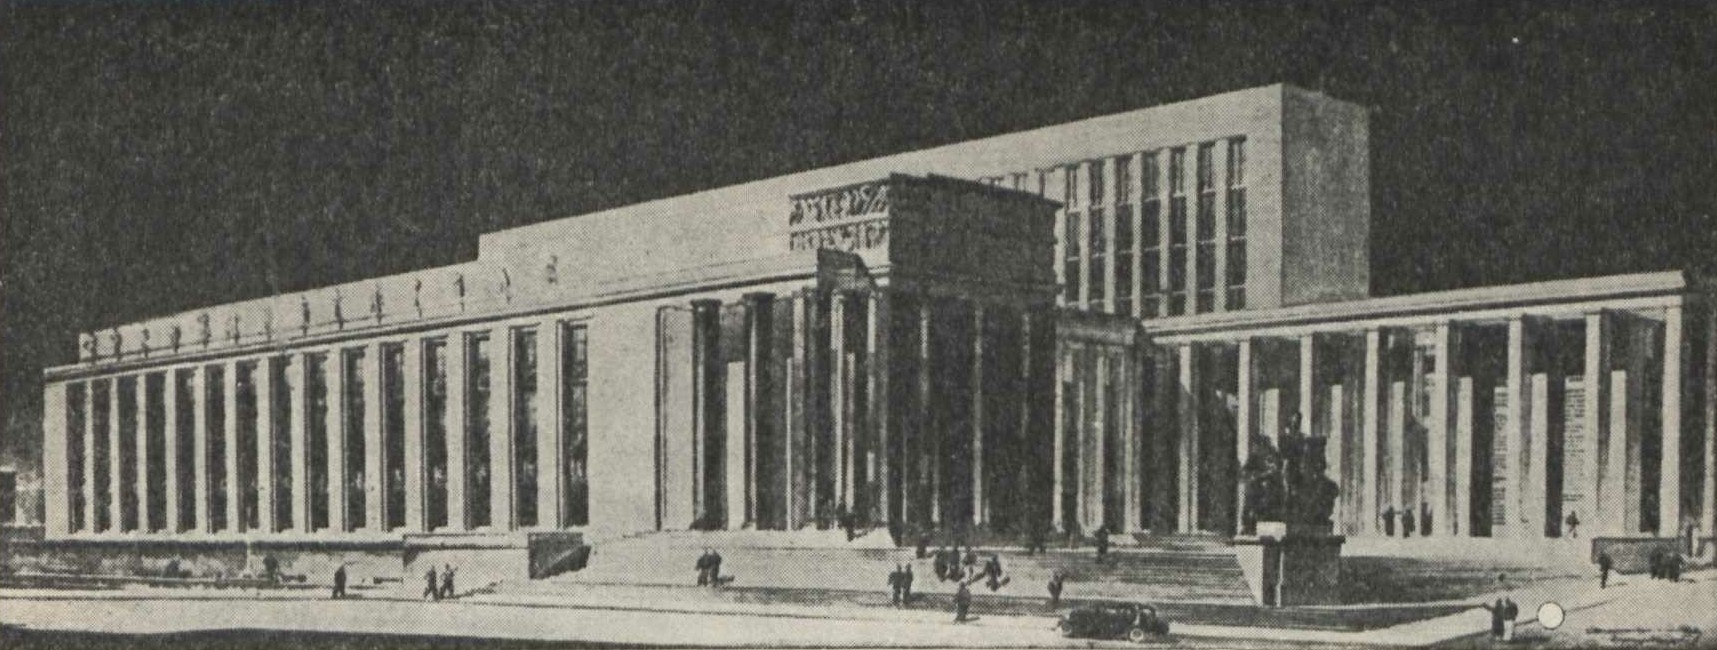 Библиотека имени Ленина в Москве (1927—1938). Перспектива окончательного проекта